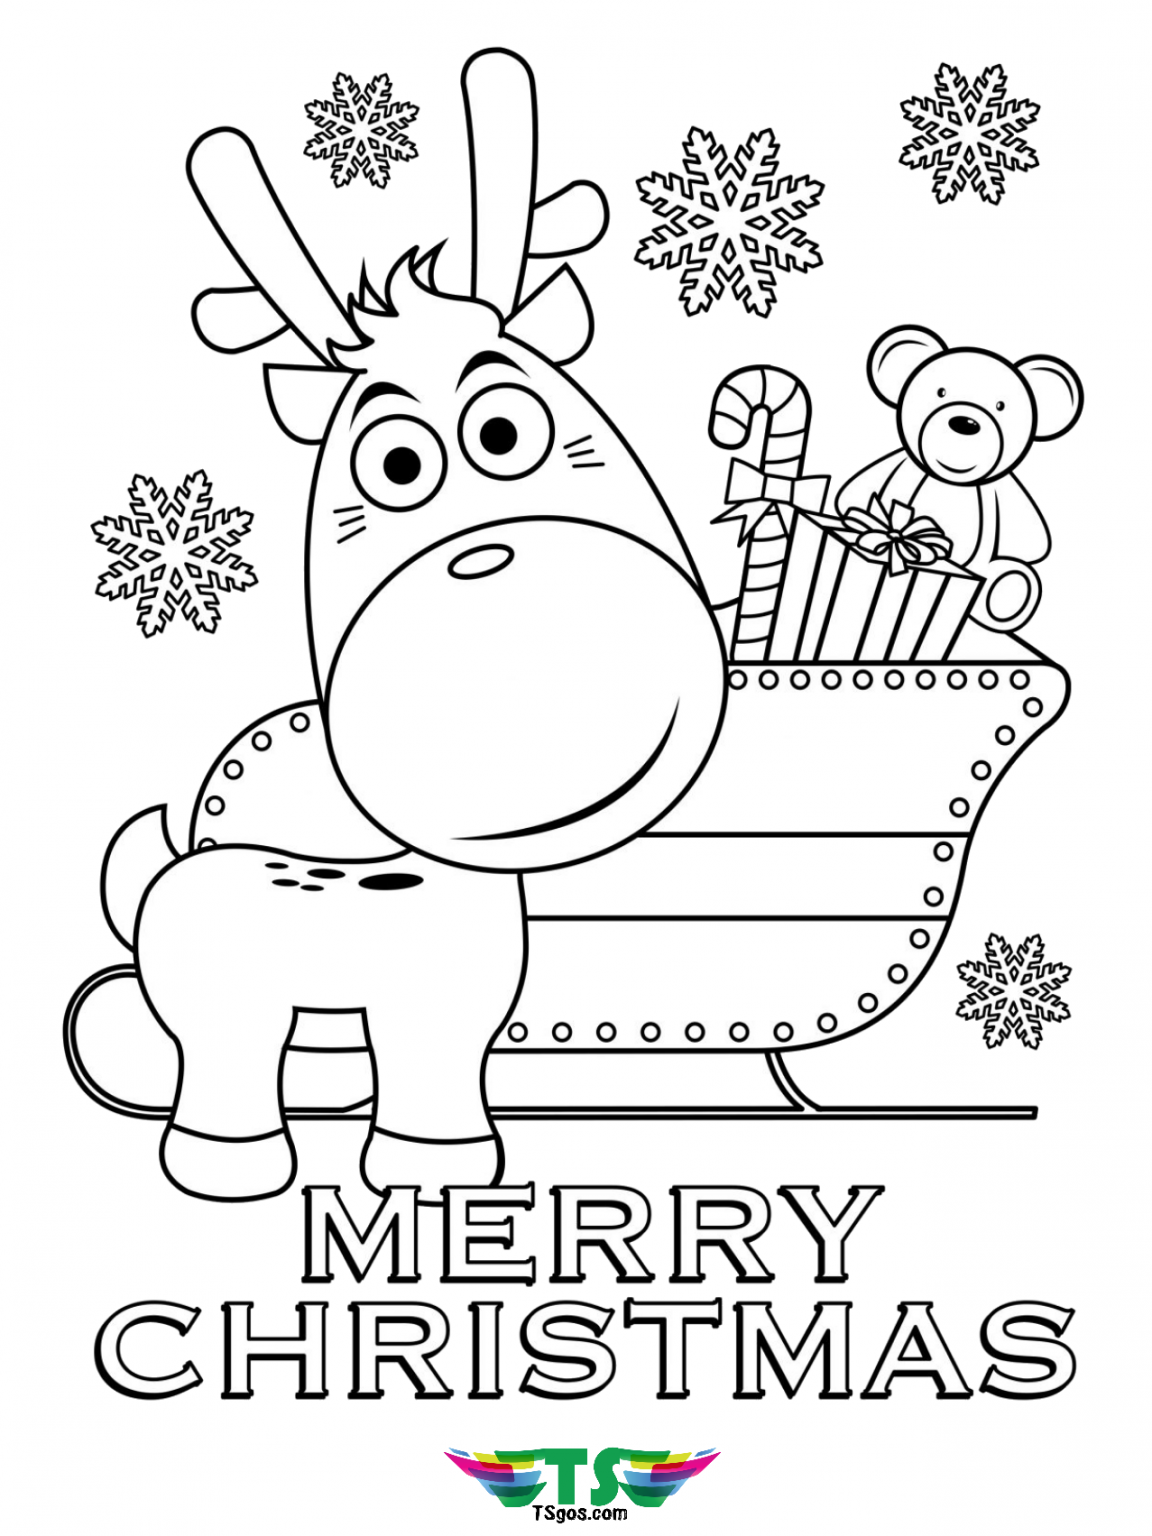 Merry christmas cartoon coloring page. - TSgos.com